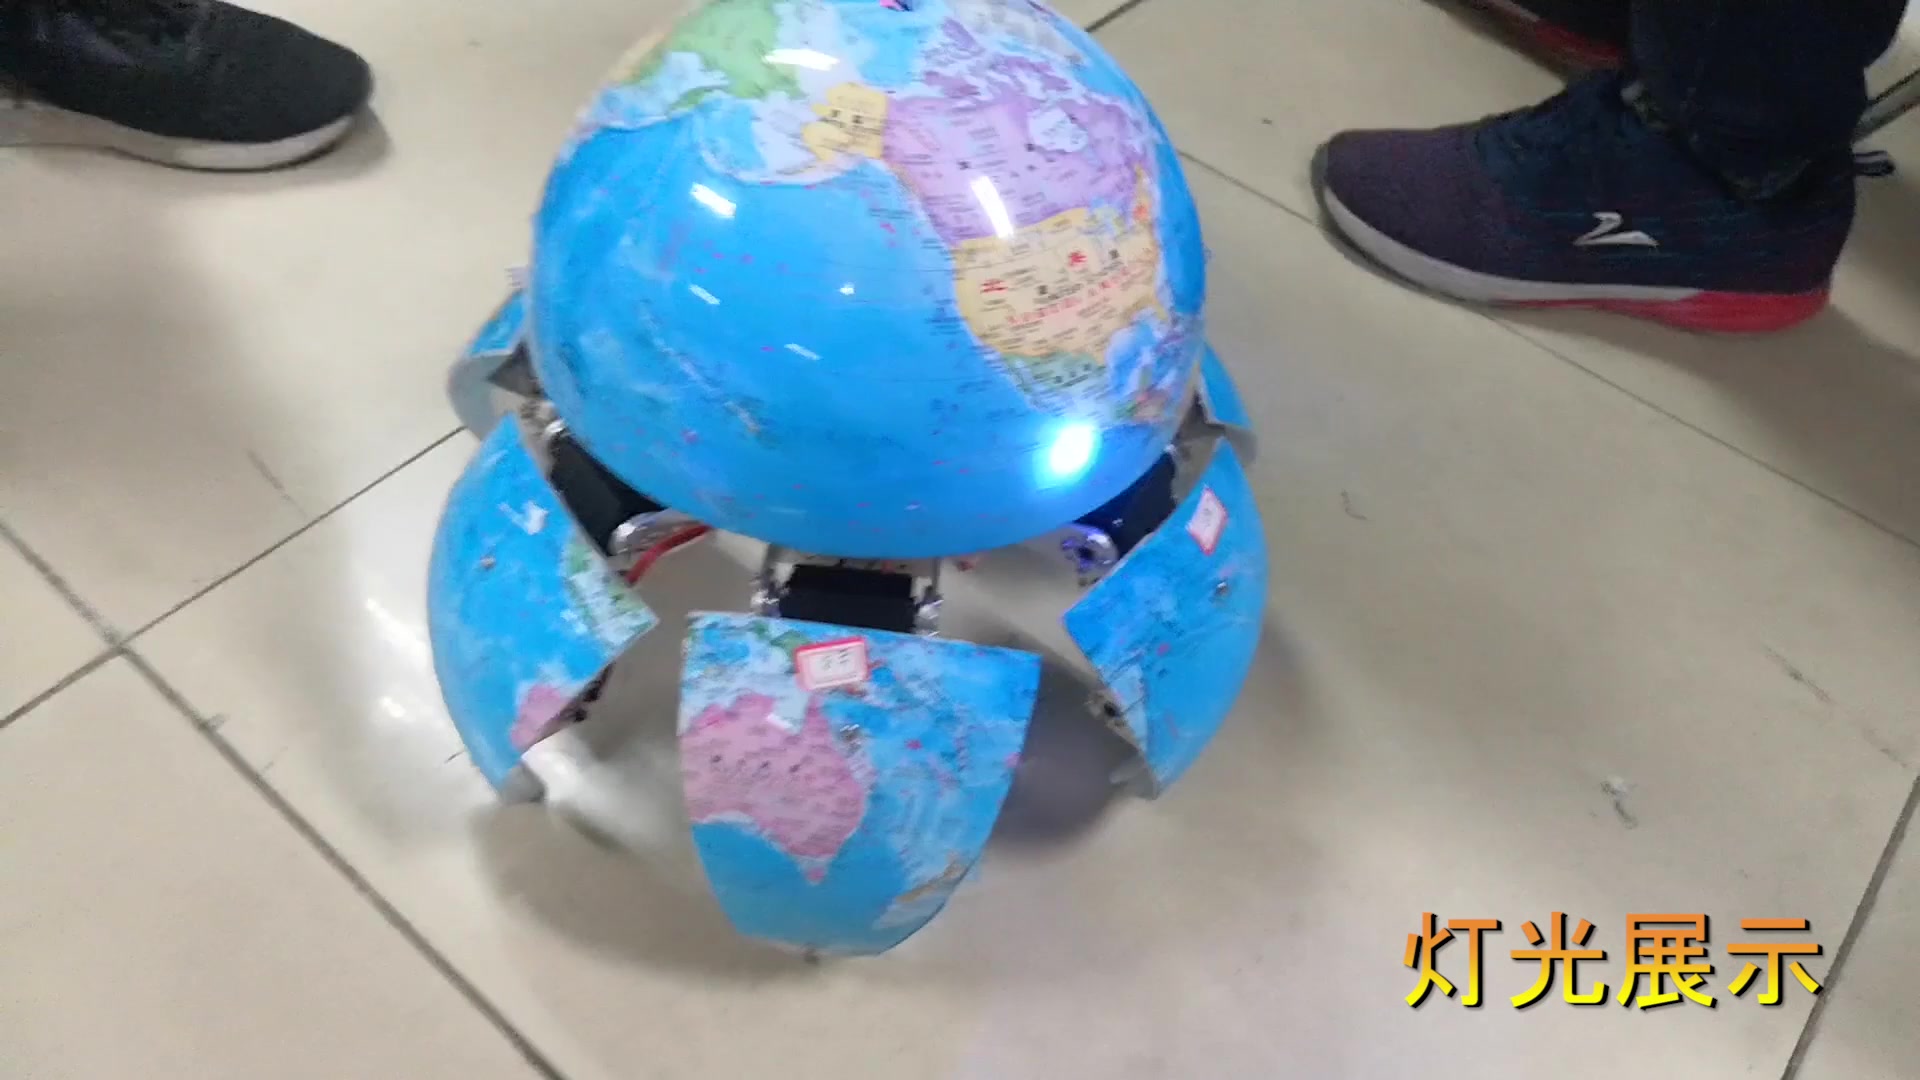 地球仪的魔鬼步伐——球形六足机器人功能展示